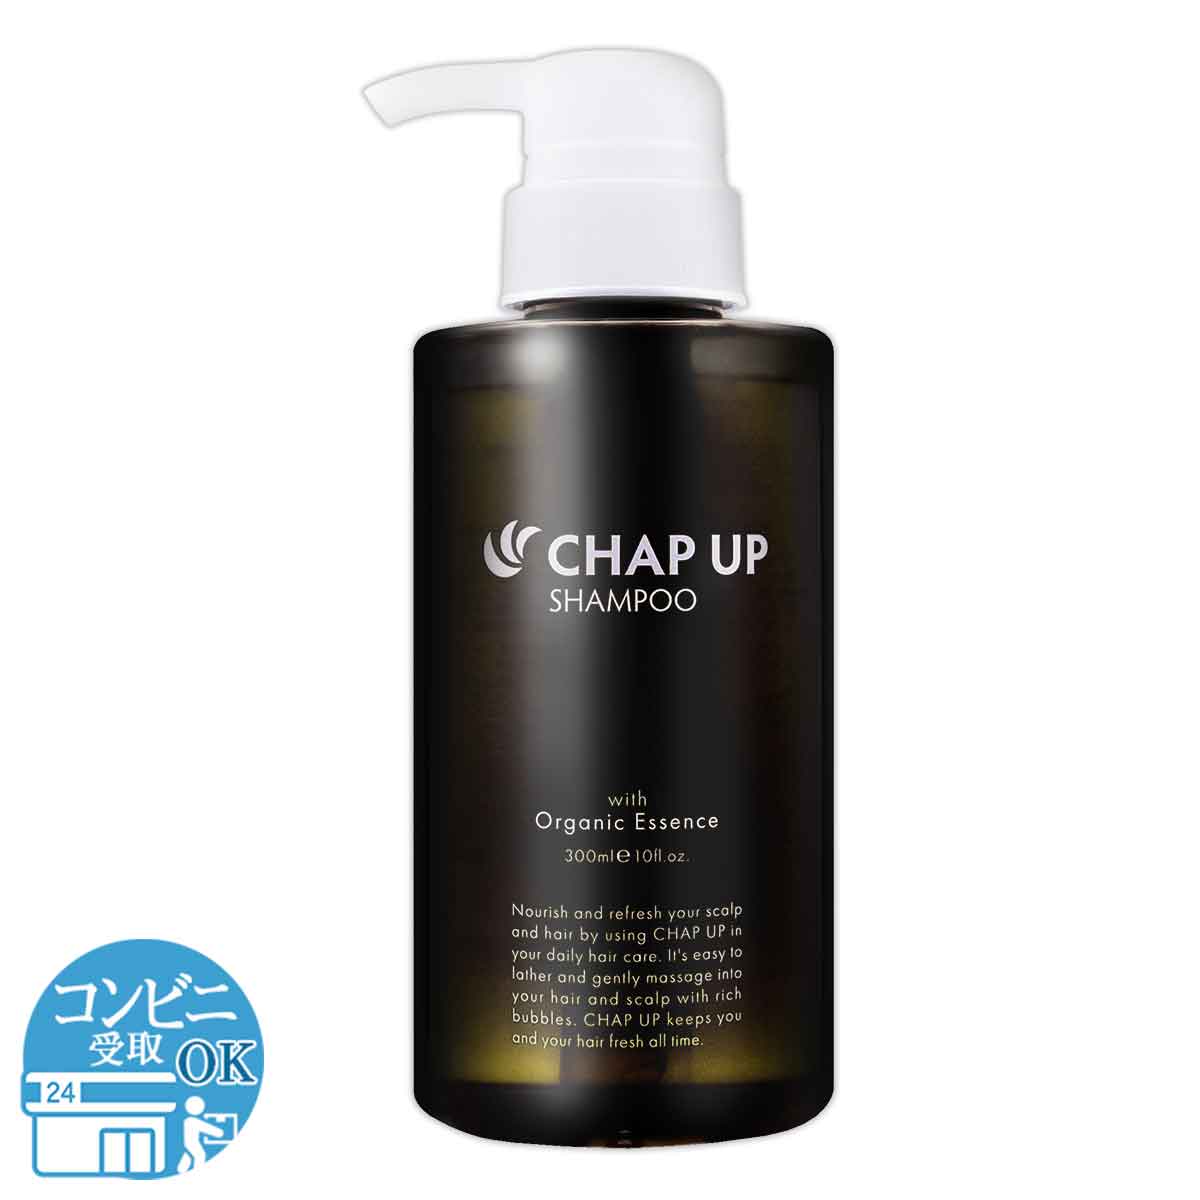 チャップアップ CHAPUP ( リニューアル版 ) チャップアップシャンプー 配送料無料NYH / チャップアップシャンプーF04-L9 / CUSHAN-01P